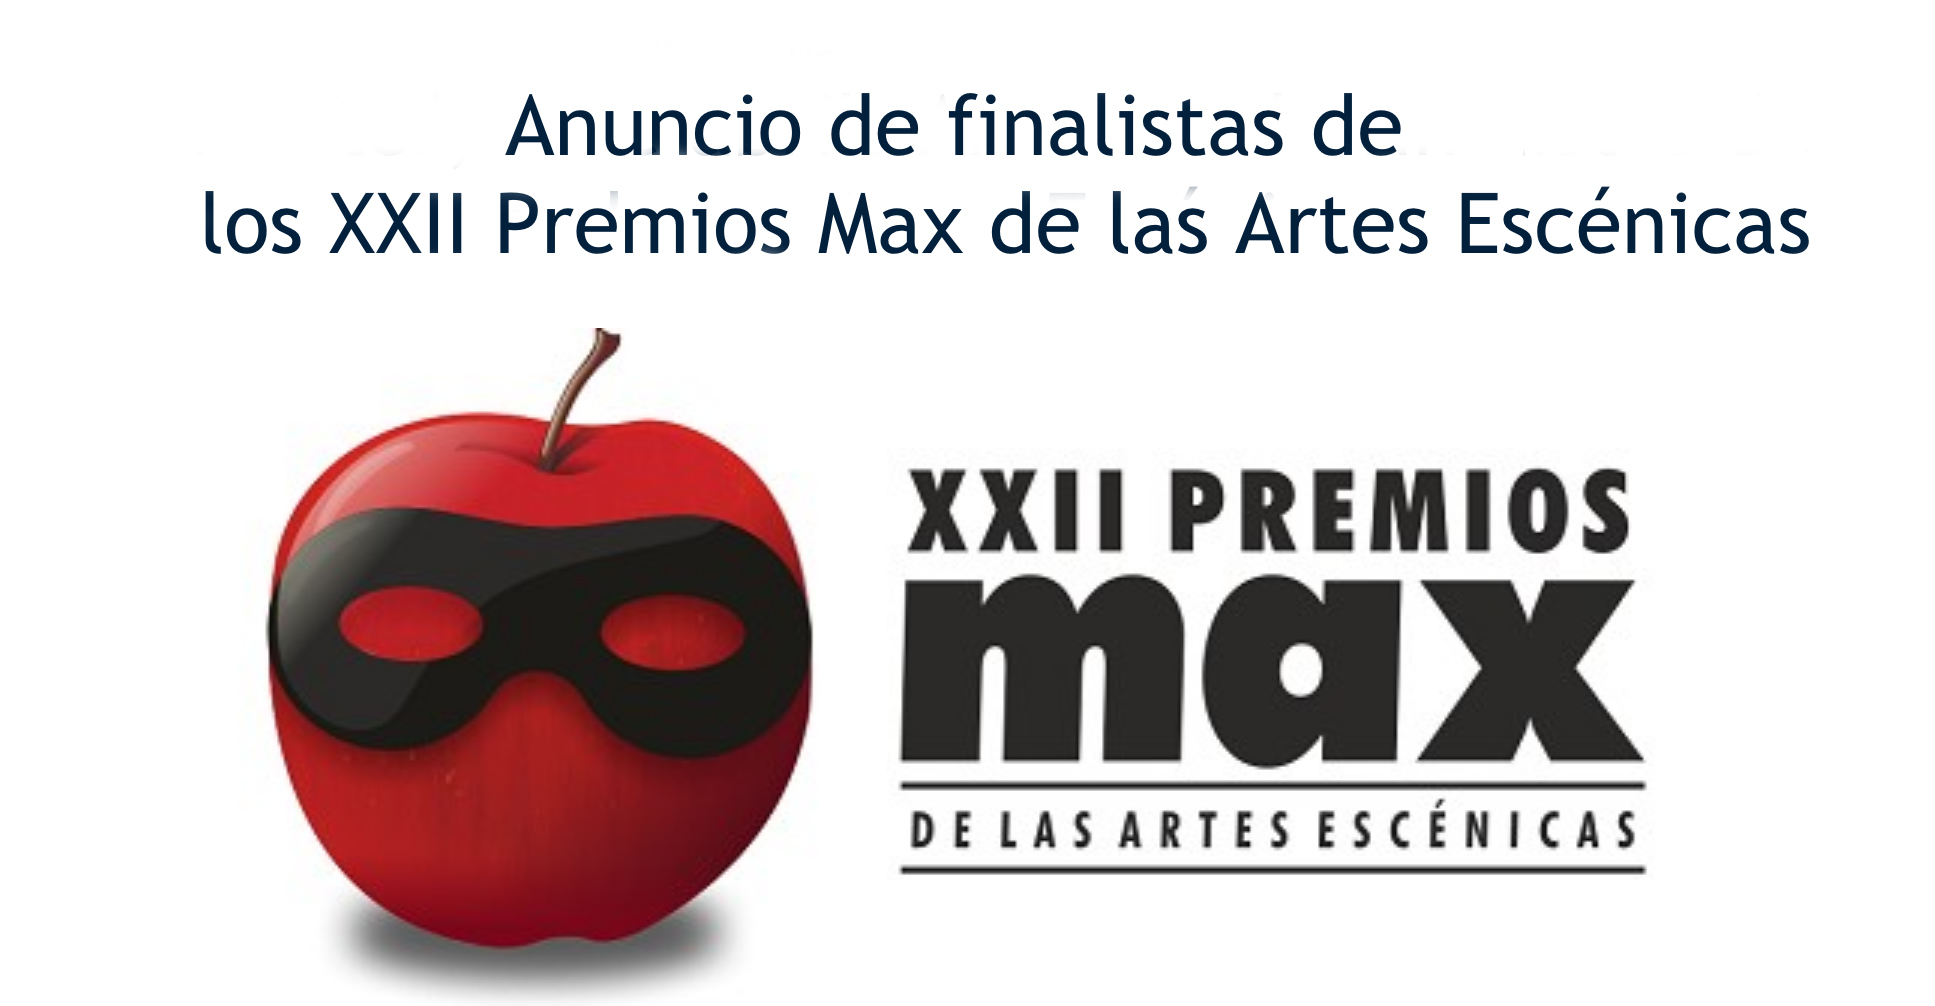 Anuncio de finalistas de los XXII Premios Max de las Artes Escénicas